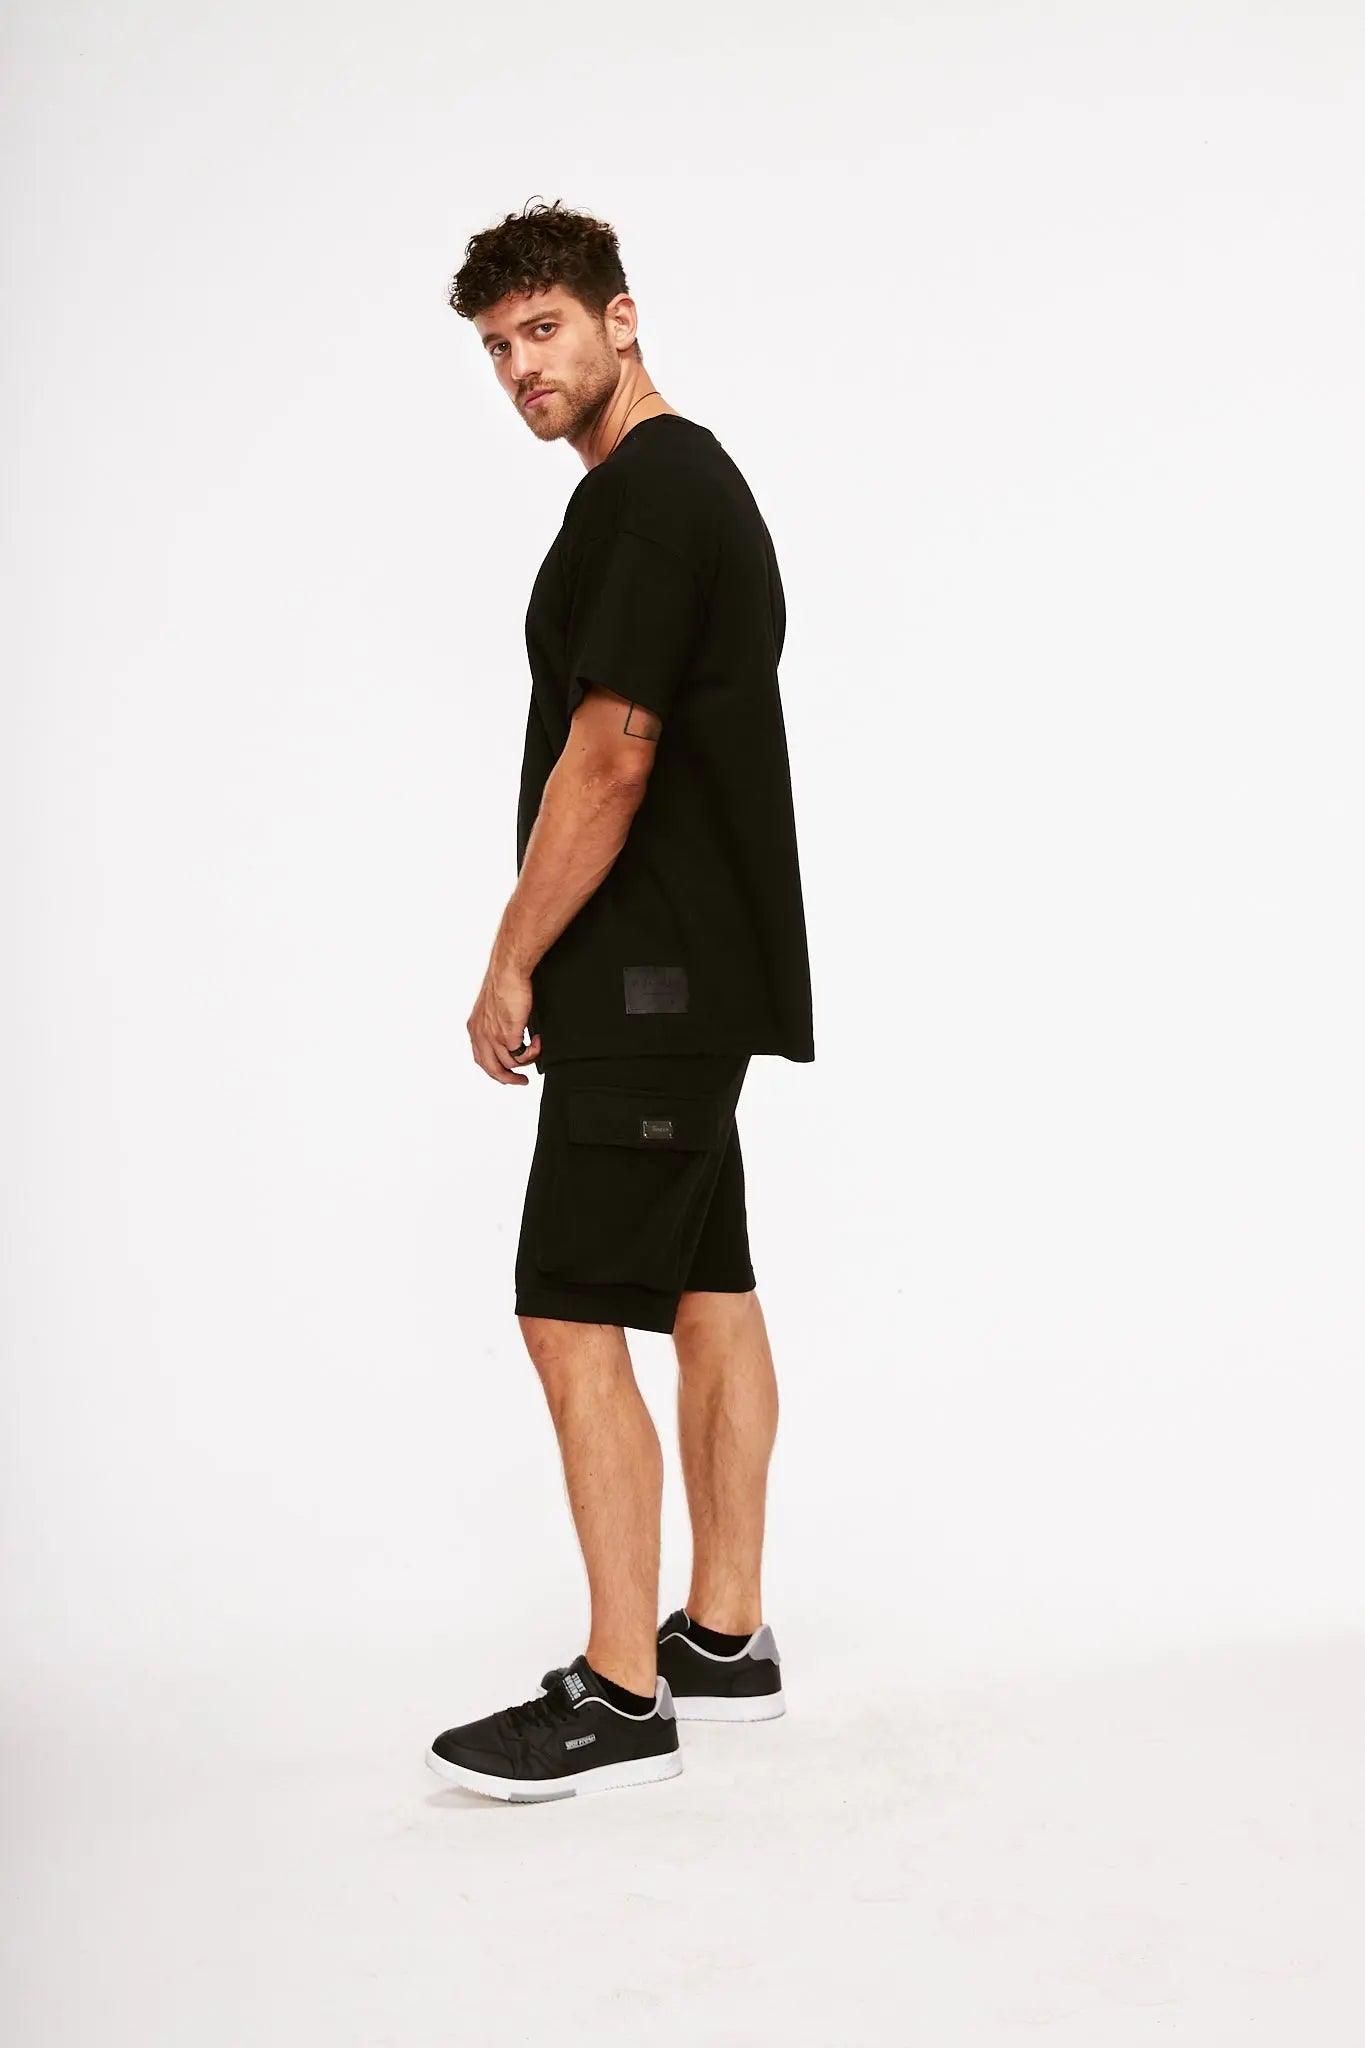 Men's Texture Taped Black T-Shirt & Black Shorts THIMOON®